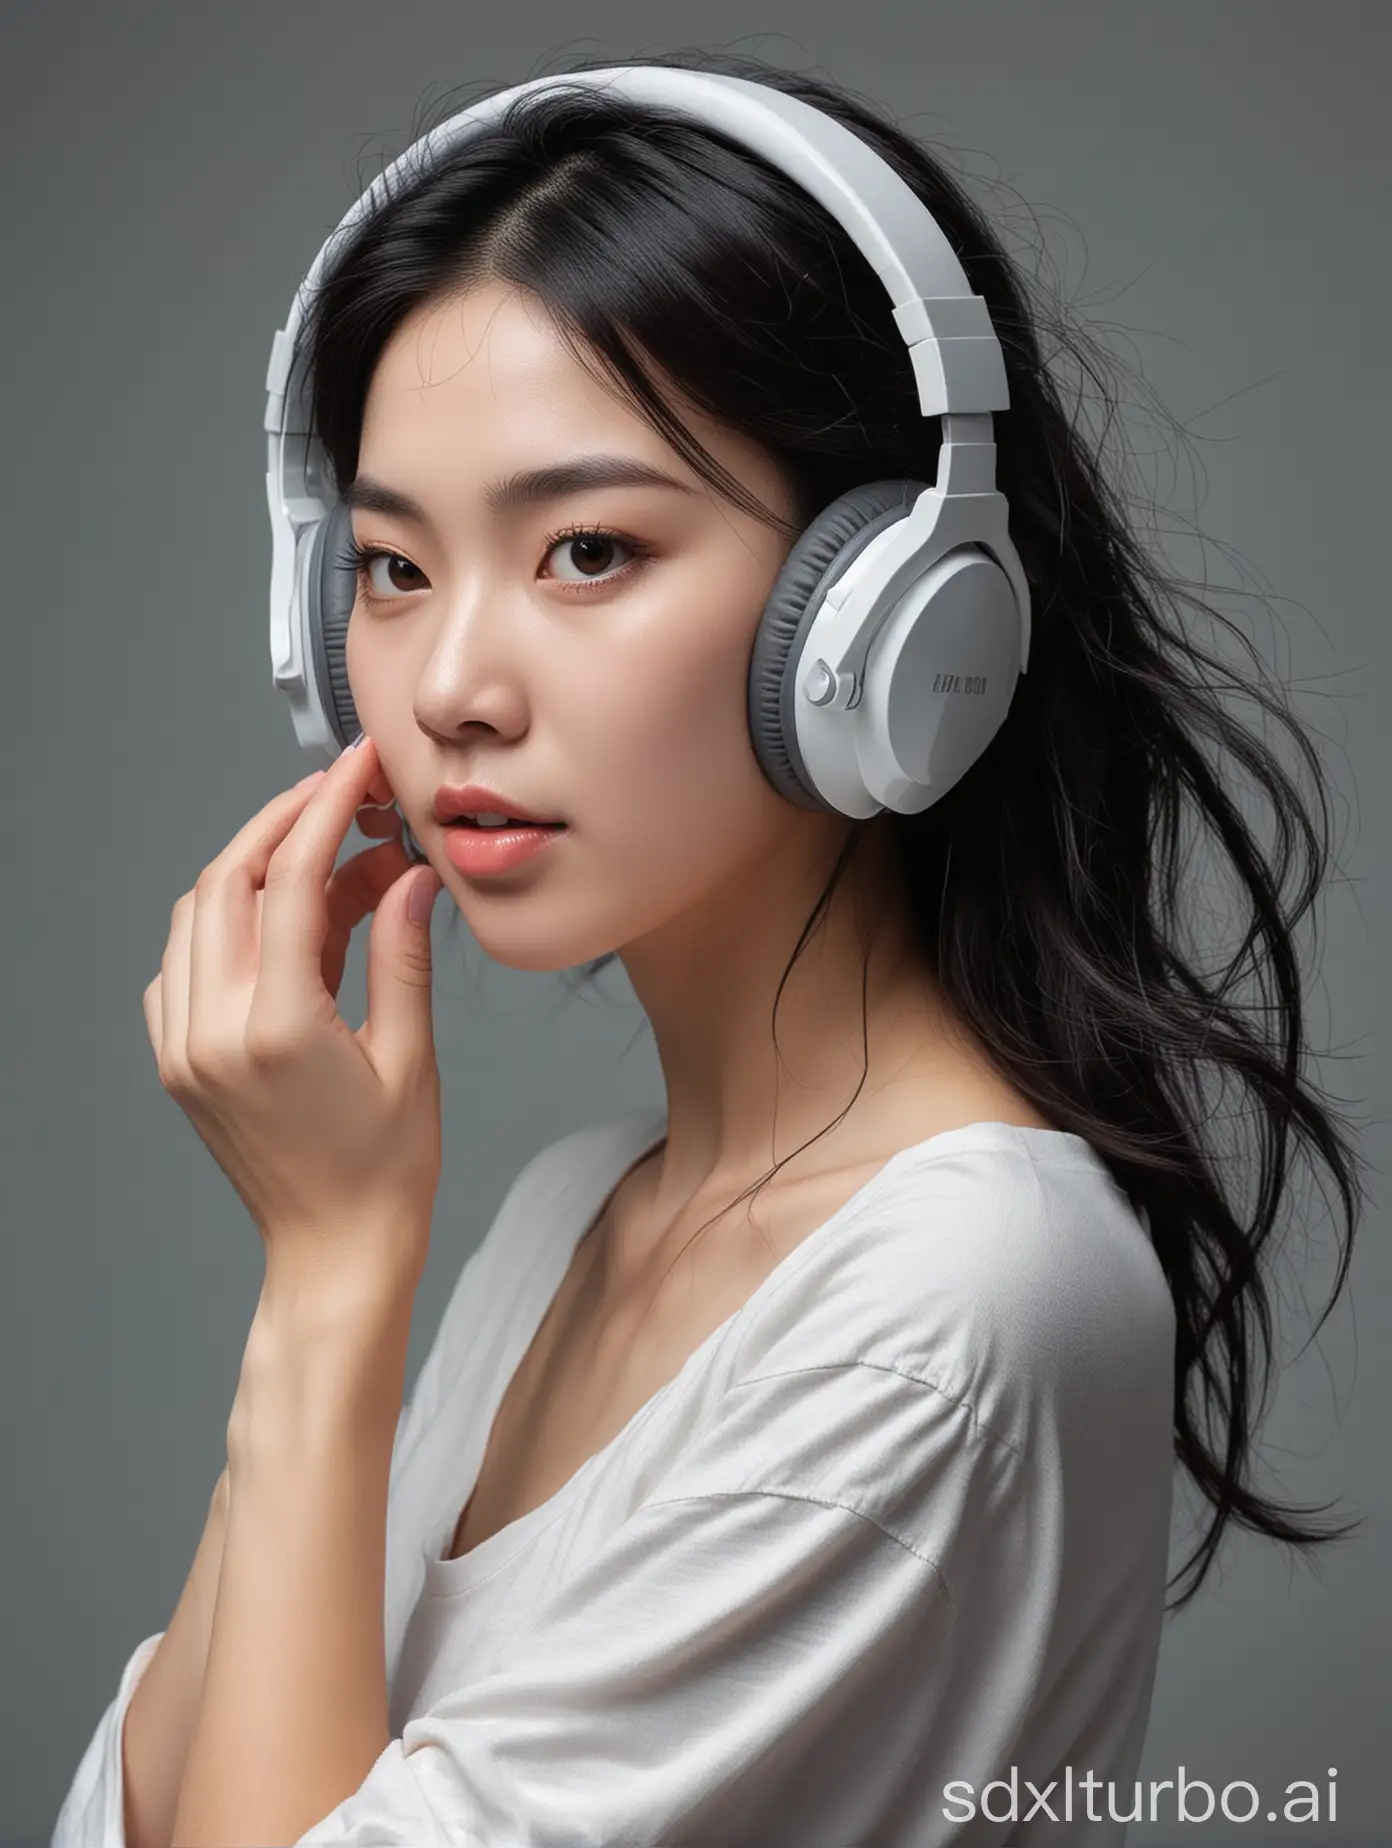 tou dai er ji mei nu (headphones woman)